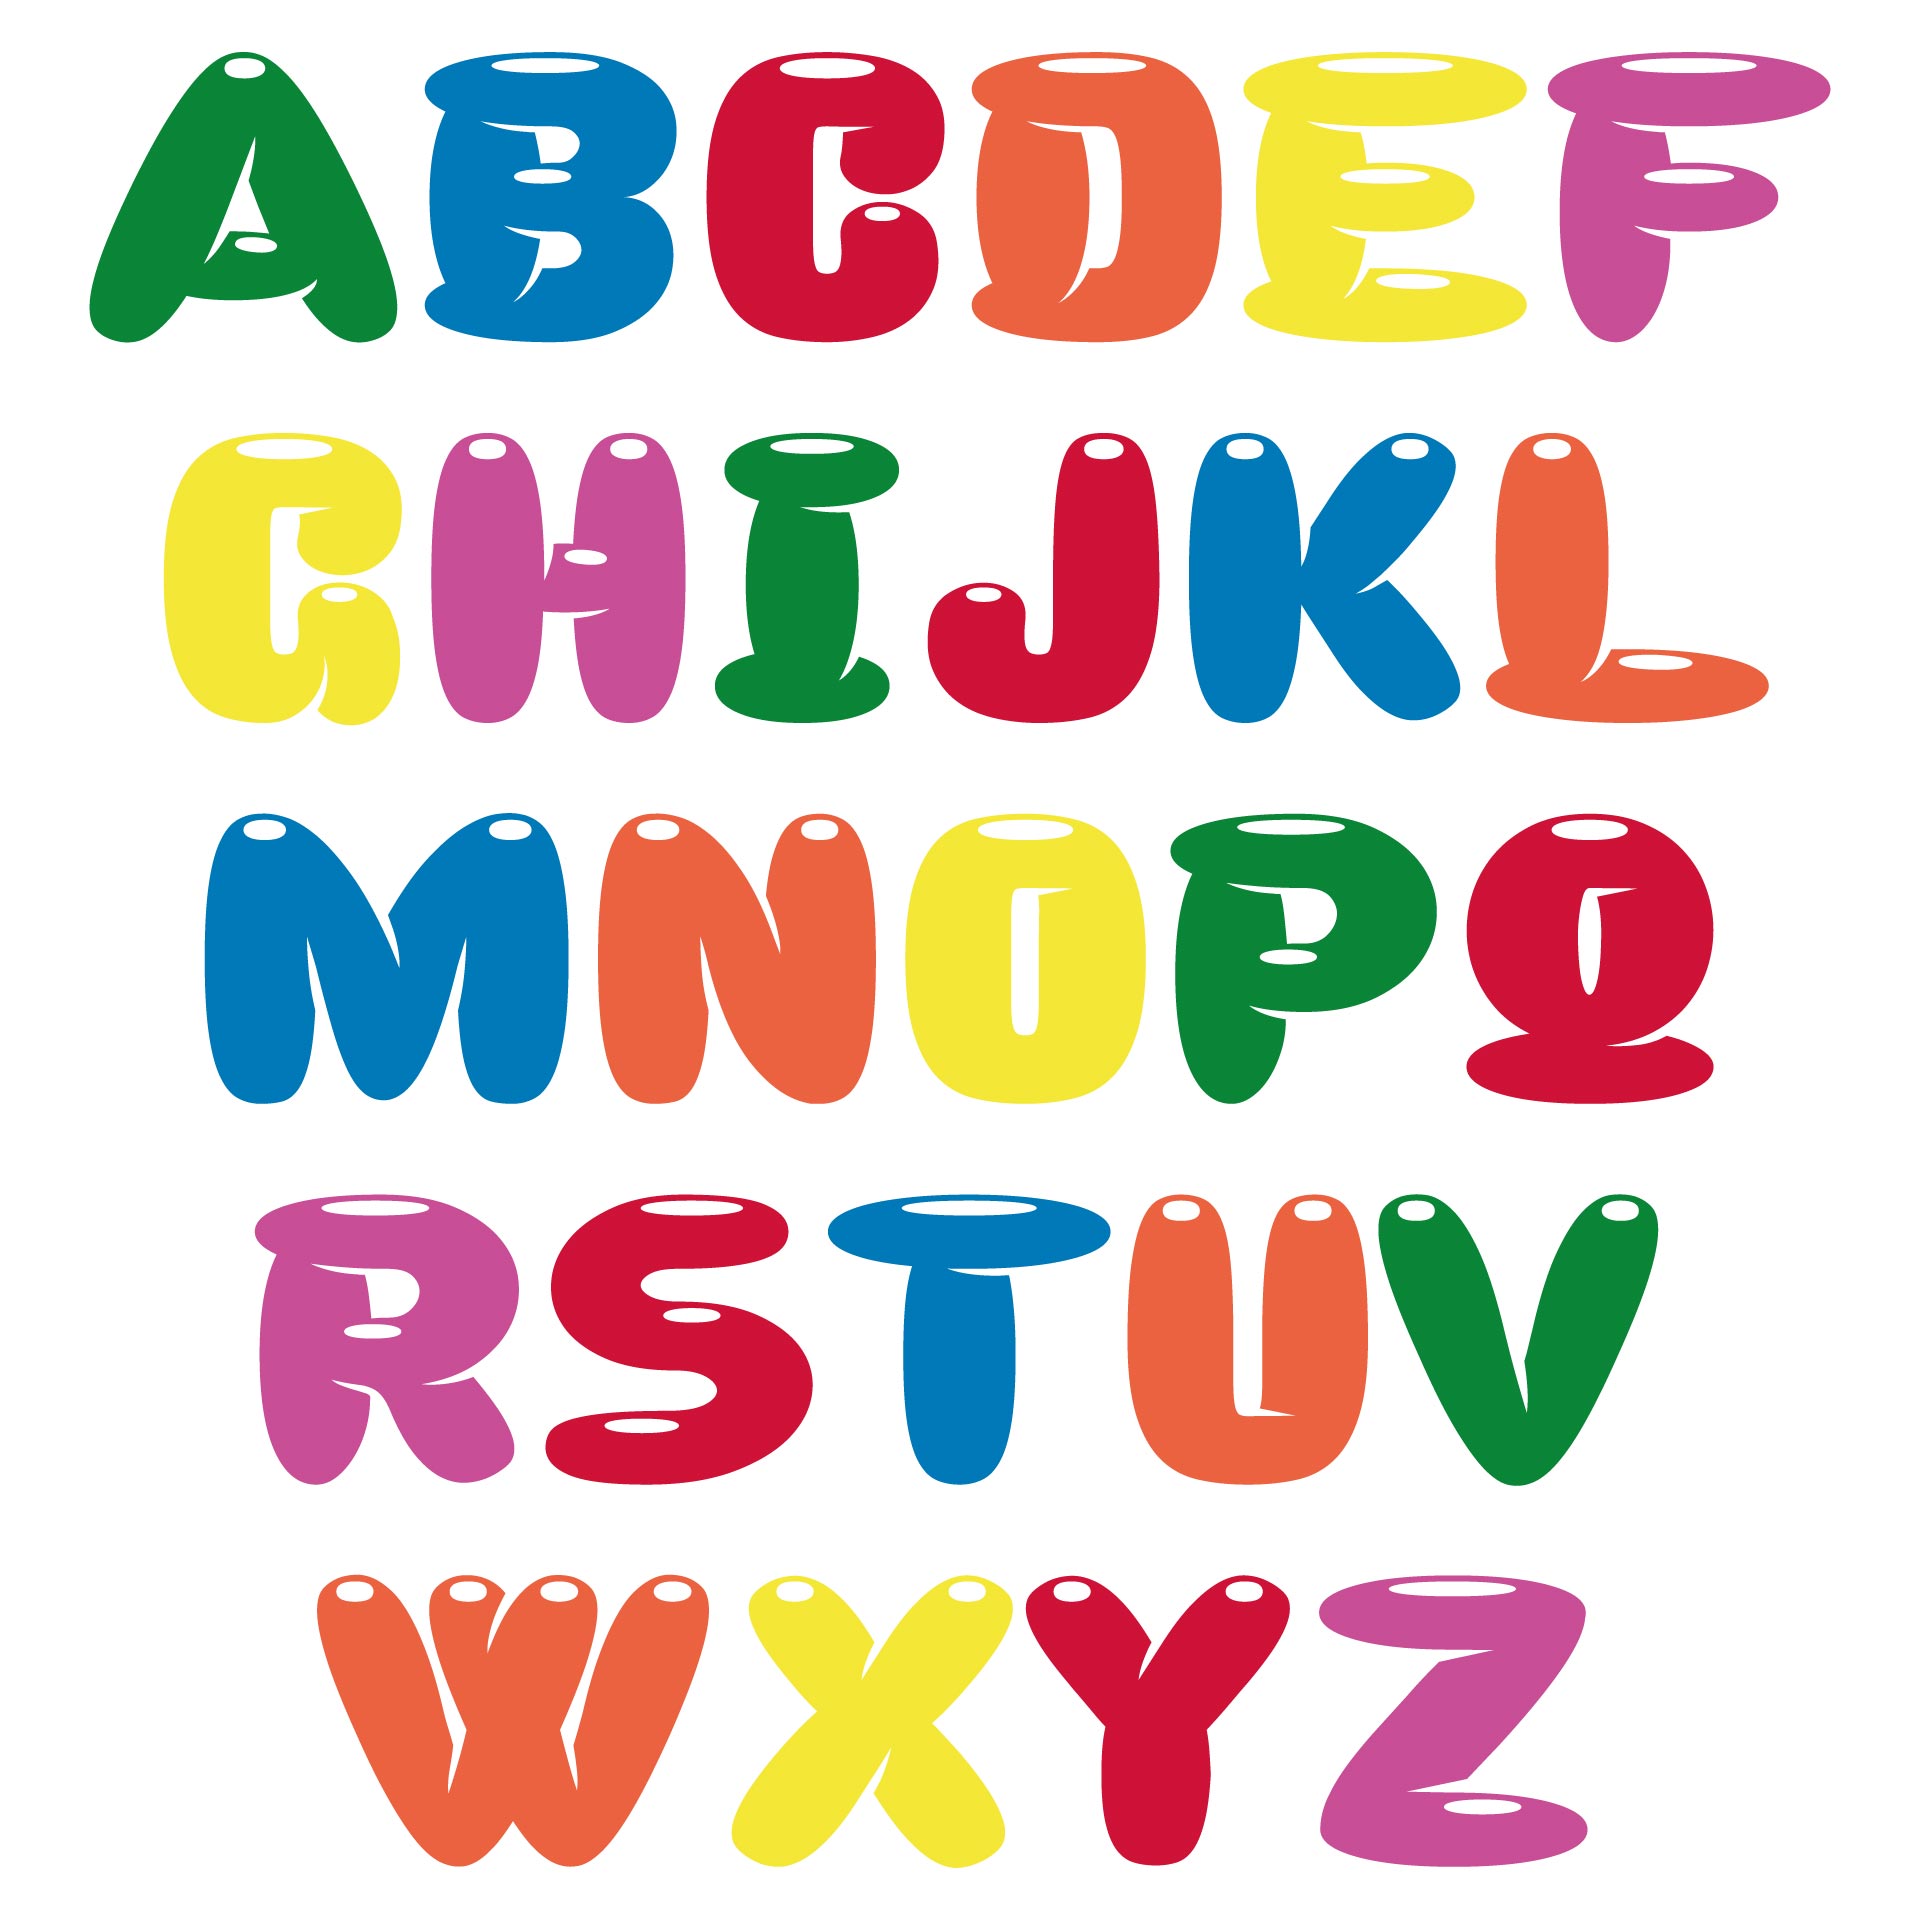 bubble-letters-alphabet-printable